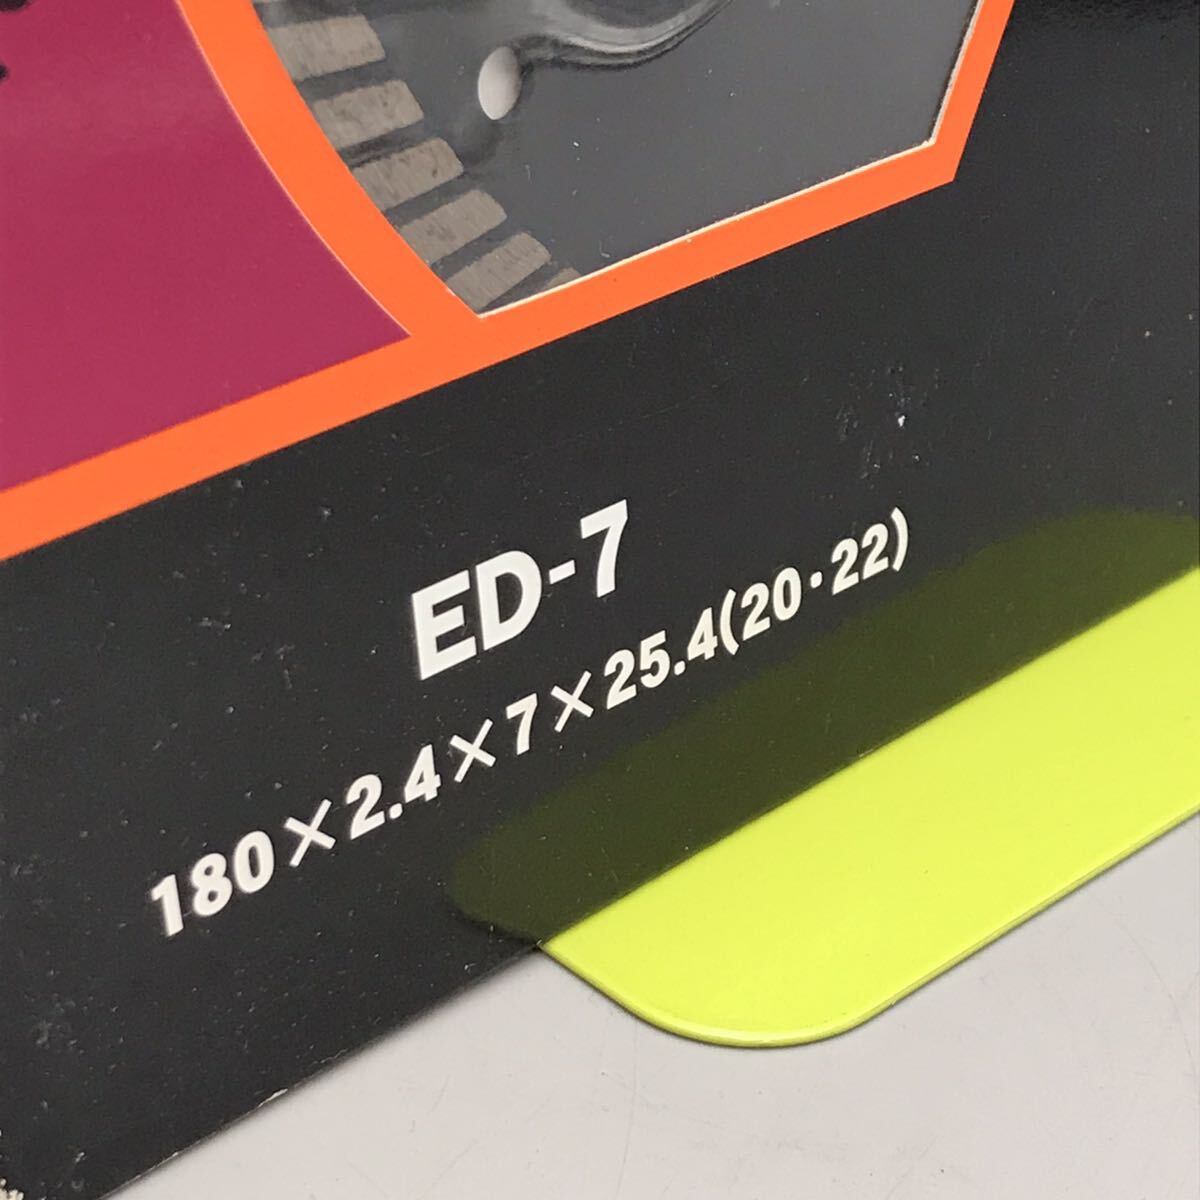 [ новый товар не использовался ]EFFORTe four to Pro tool бриллиант резчик wave модель ED-7 сухой электроинструмент лезвие бритва бетон сделано в Японии 